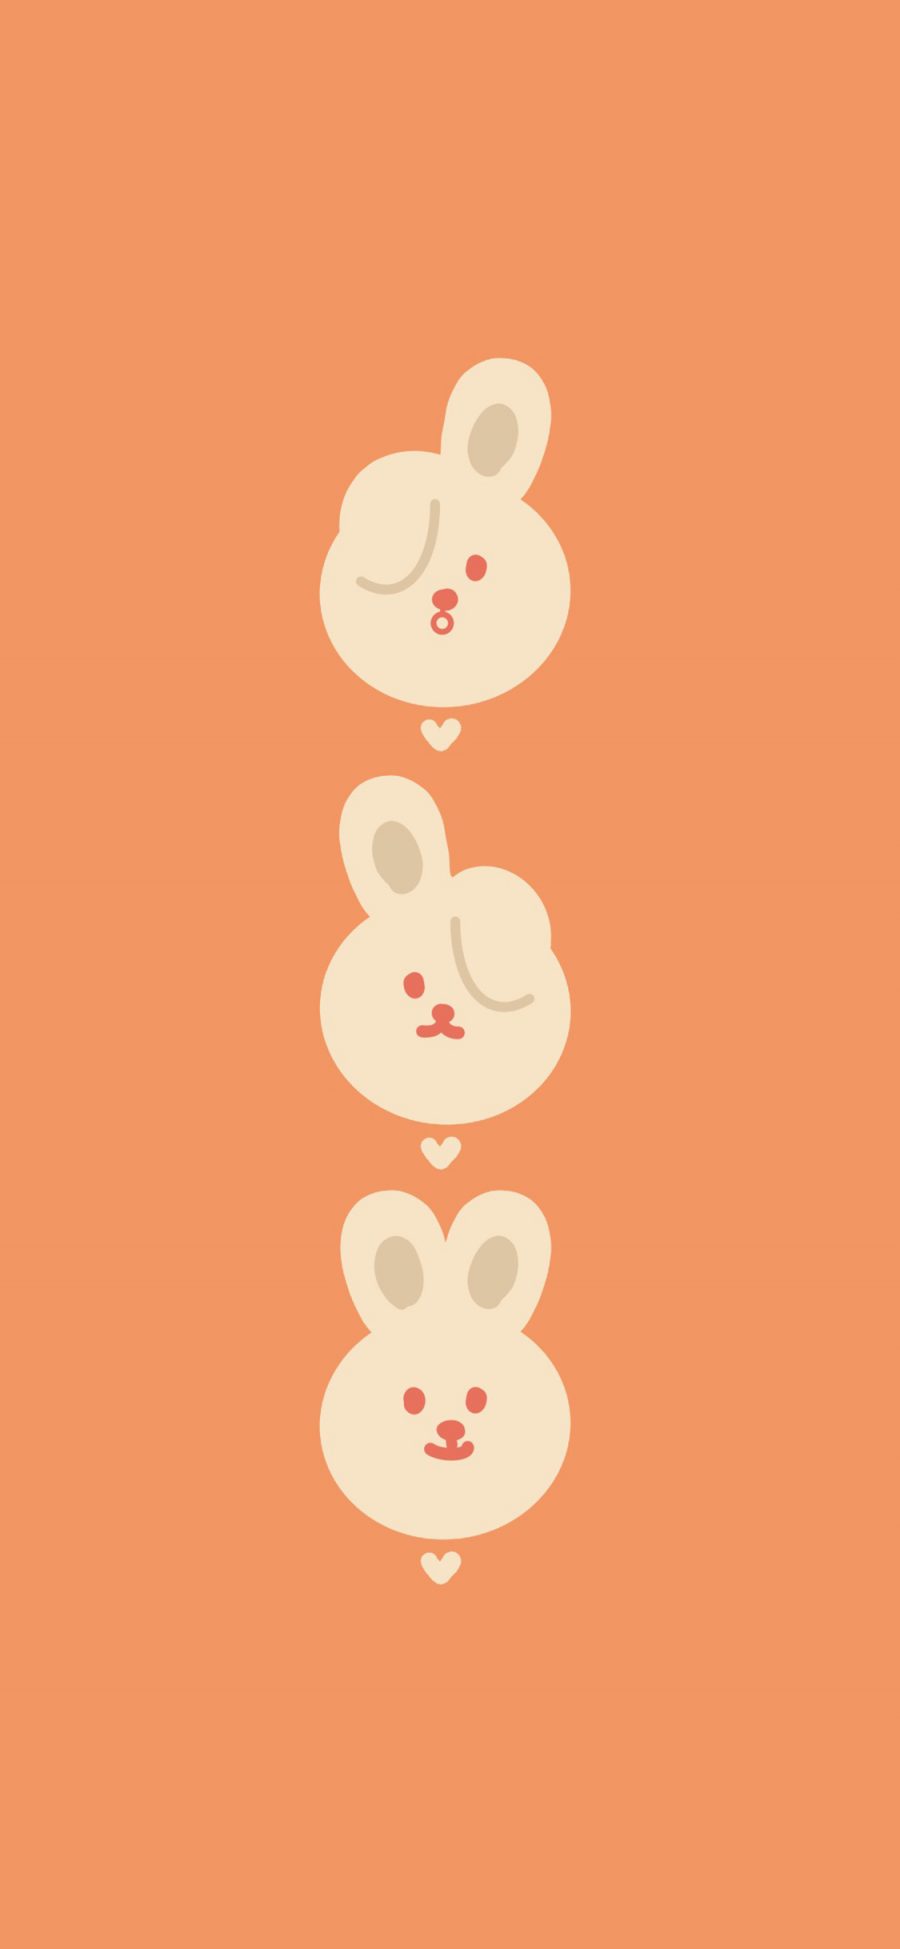 [2436×1125]橙色背景 卡通 兔子 可爱 苹果手机动漫壁纸图片